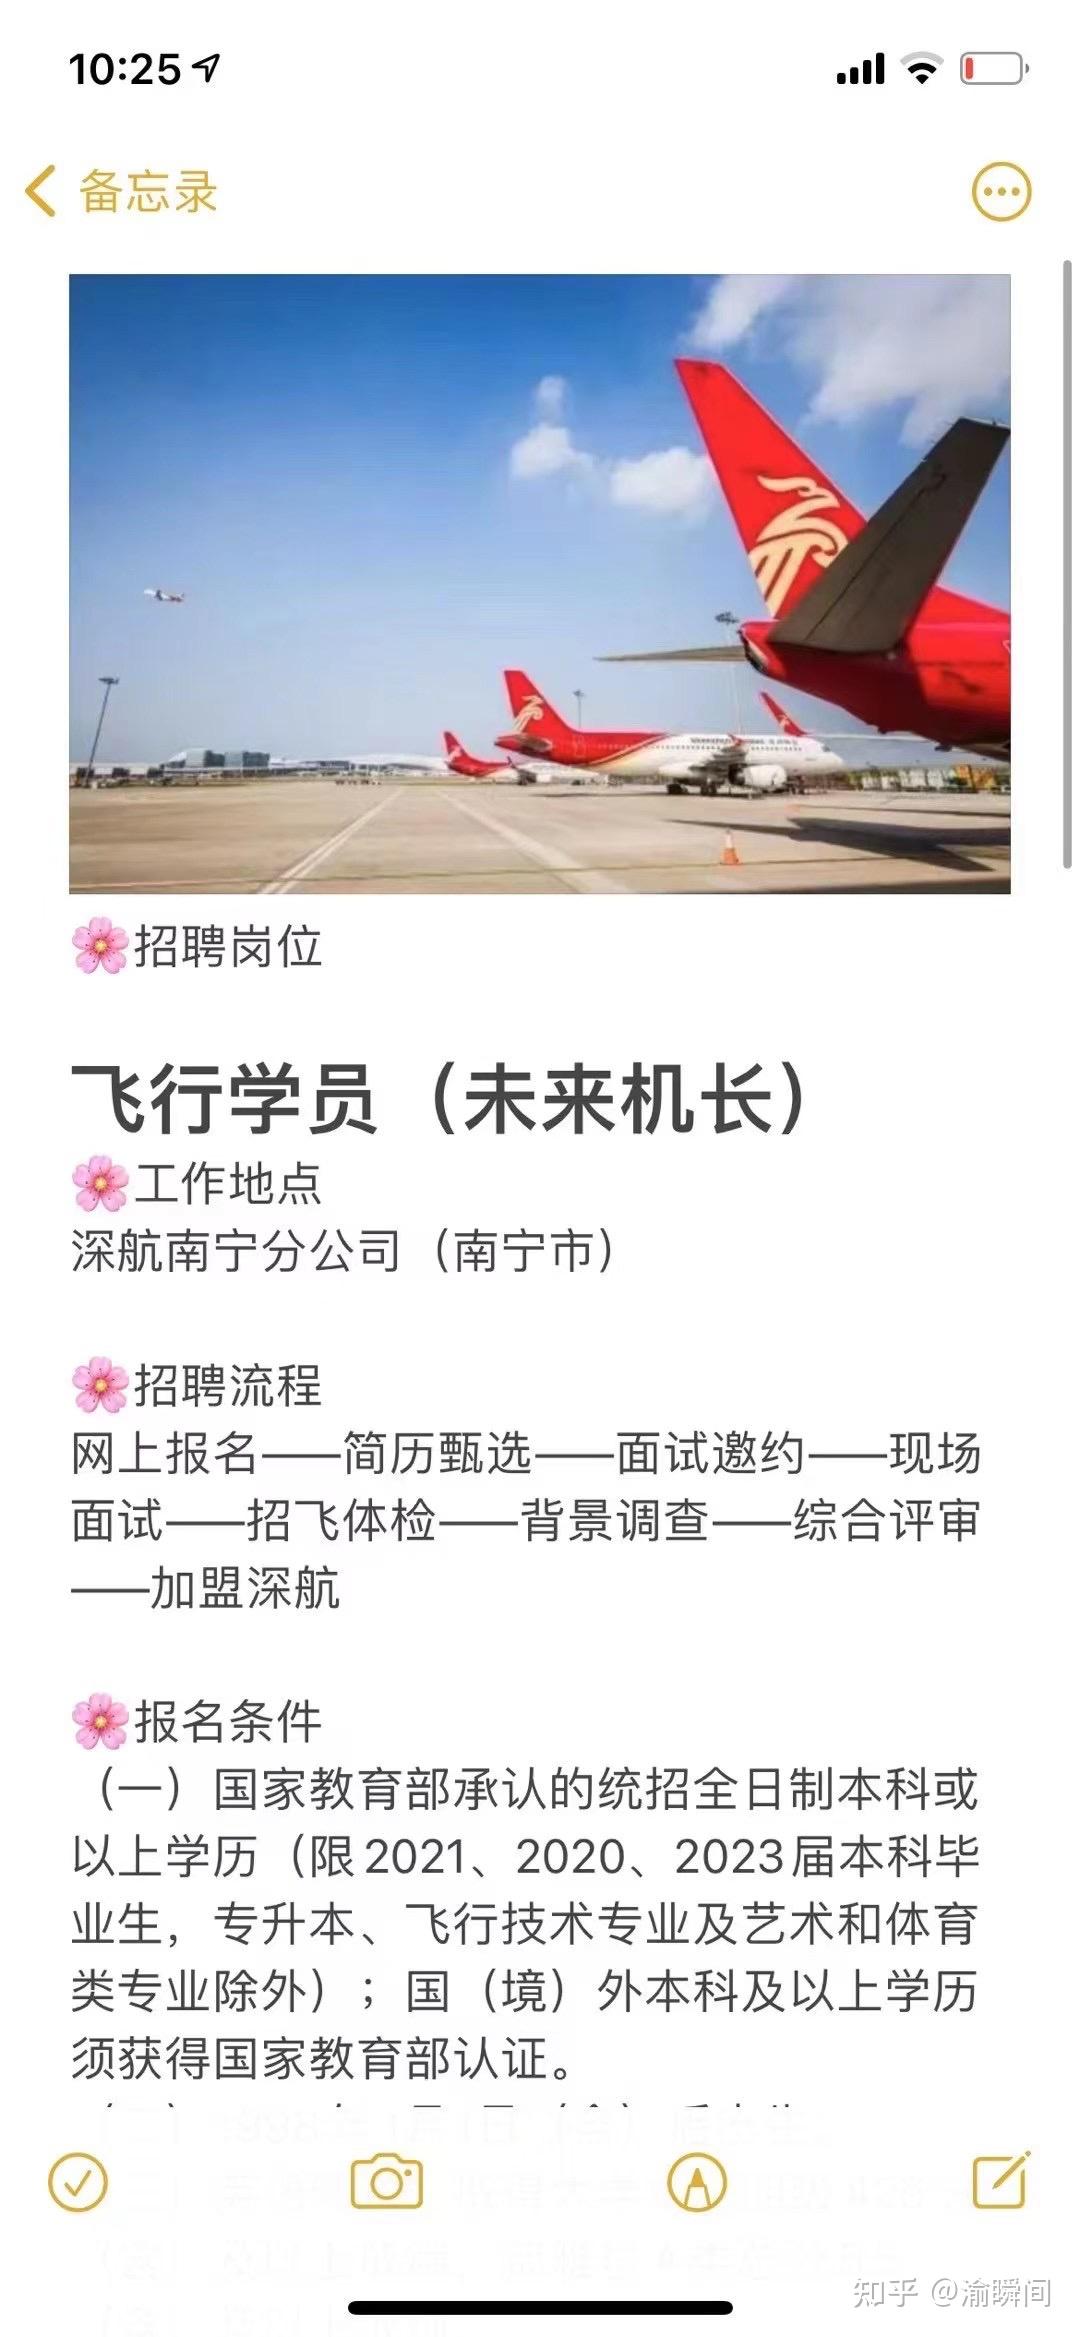 中国南方航空股份有限公司2023年航空安全员招聘简章-西安体育学院毕业生就业指导服务中心——欢迎您的光临！！